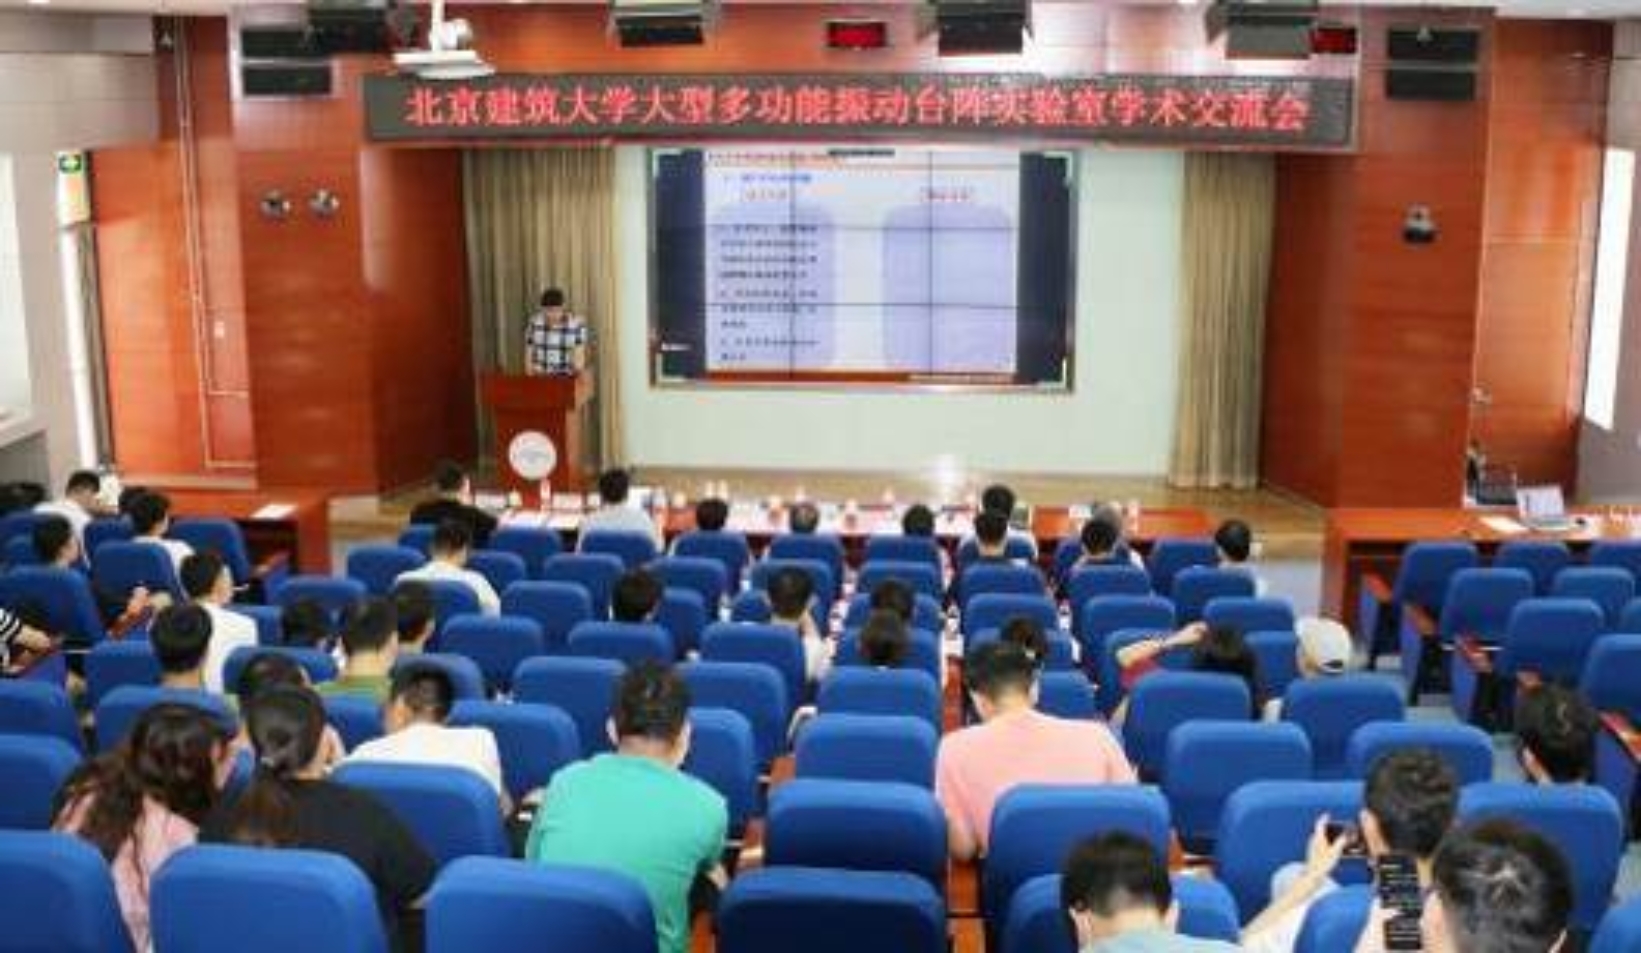 北京建筑大学大型多功能振动台阵实验室学术交流会成功举办